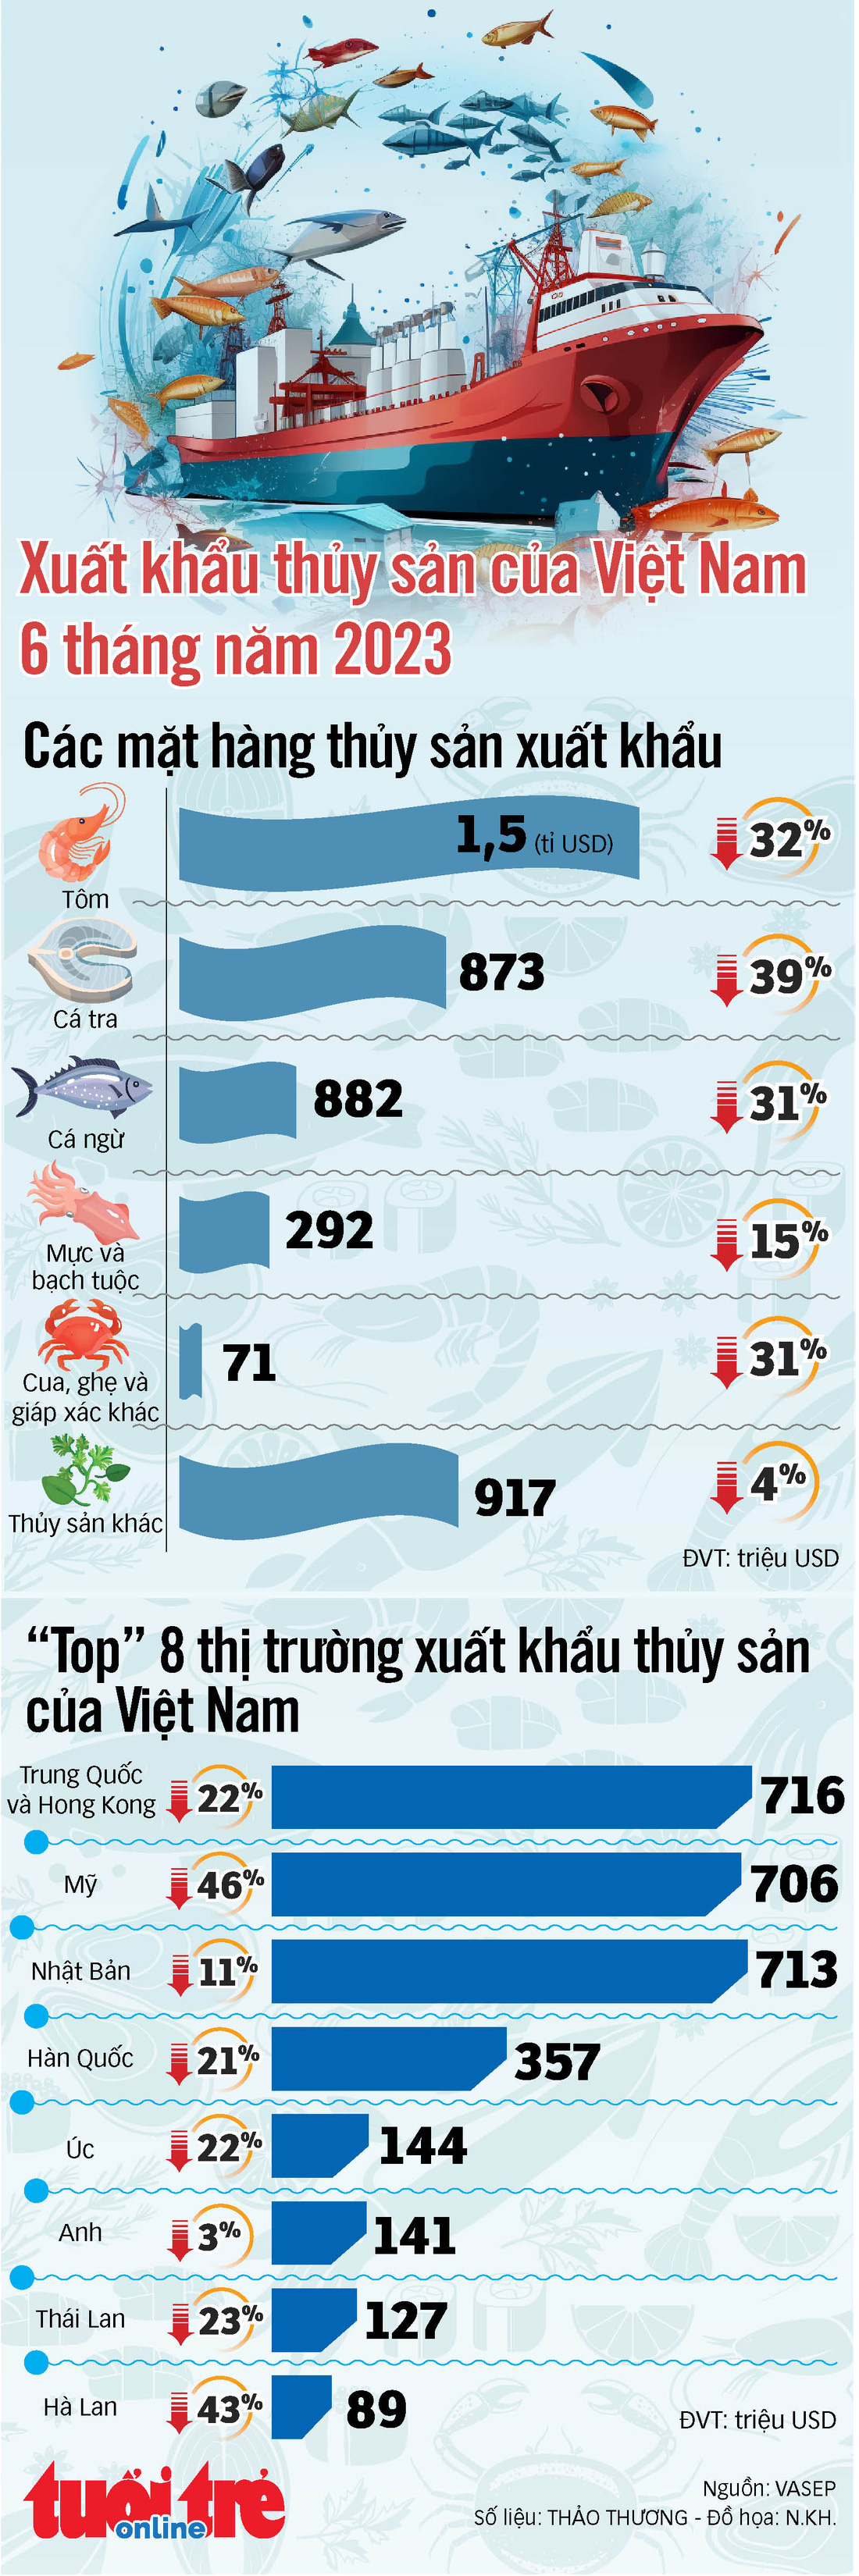 Xuất khẩu thuỷ sản của Việt Nam 6 tháng năm 2023 - Ảnh 1.